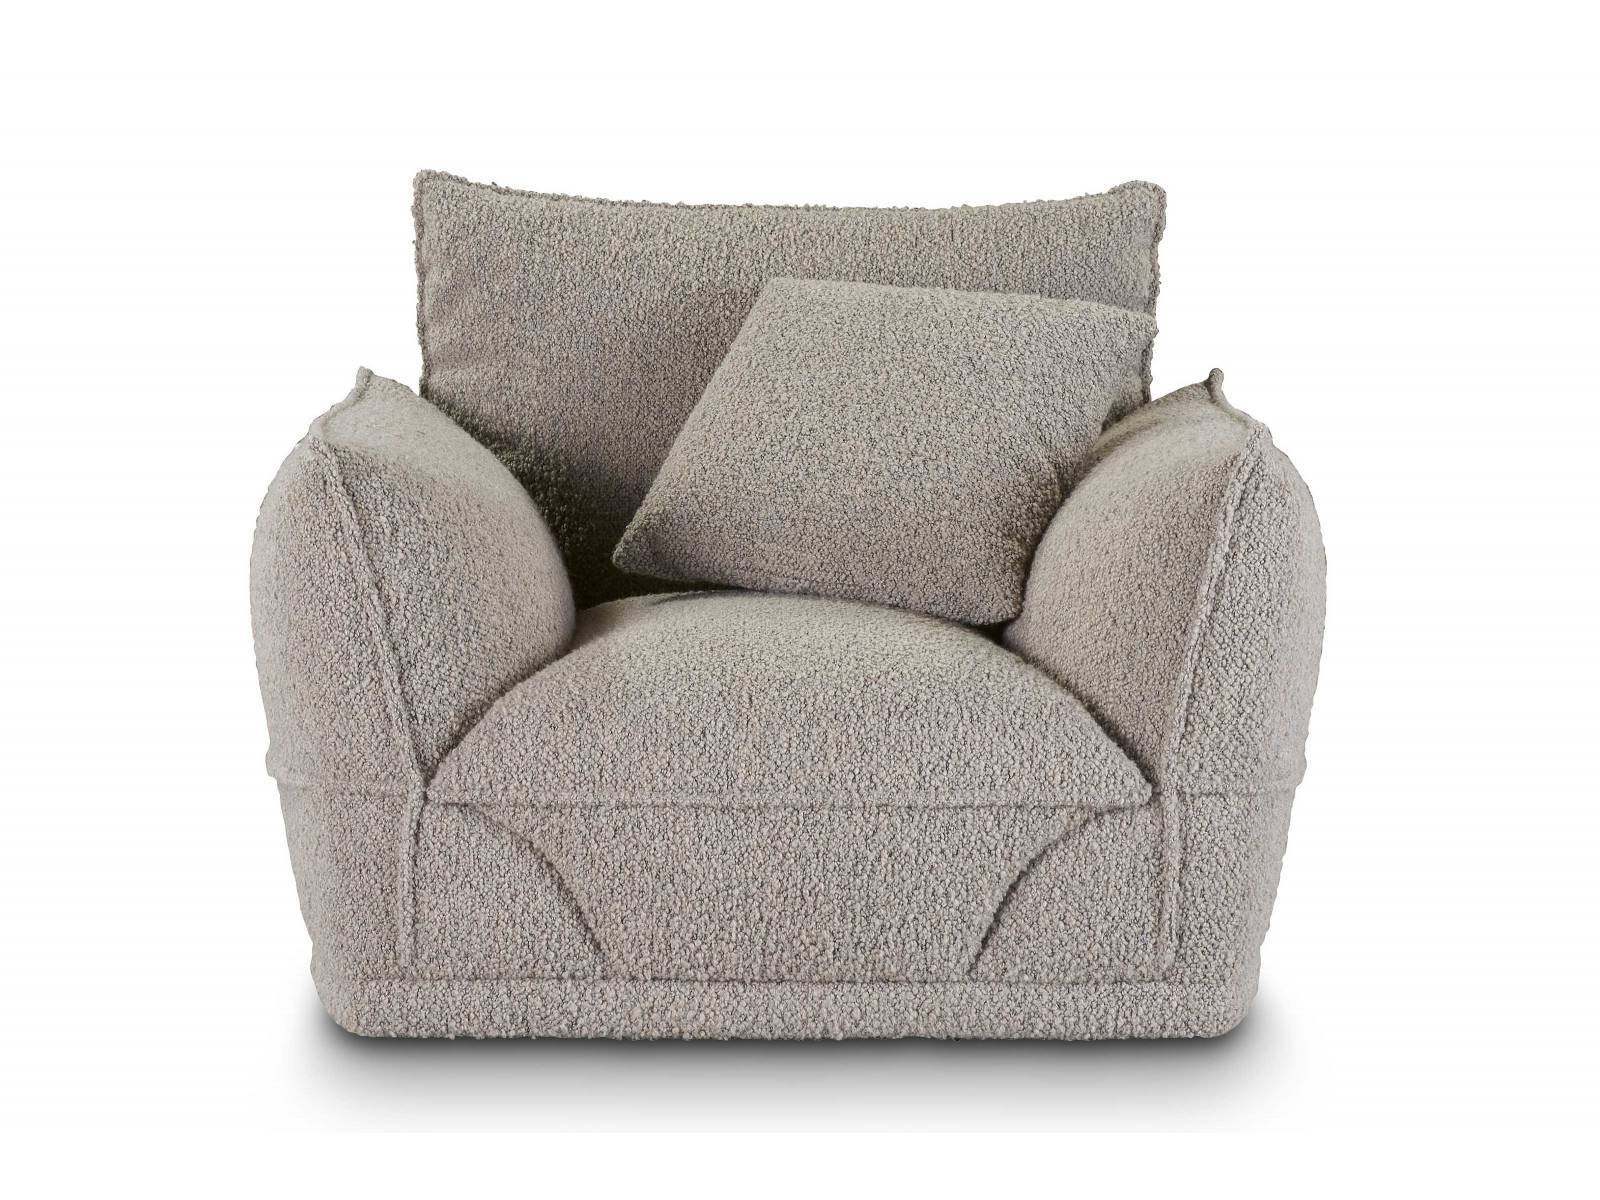 Der Sessel ist ein Teil von Christophe Delcourts Kollektion «Palatine». Markenzeichen sind die sich kreuzenden Linien der Paspel-Nähte von Sitzflächen und Armlehnen. Der neue Bouclé-Stoff aus Wolle und Alpaka macht das Modell flauschig und einladend. ROCHE BOBOIS.